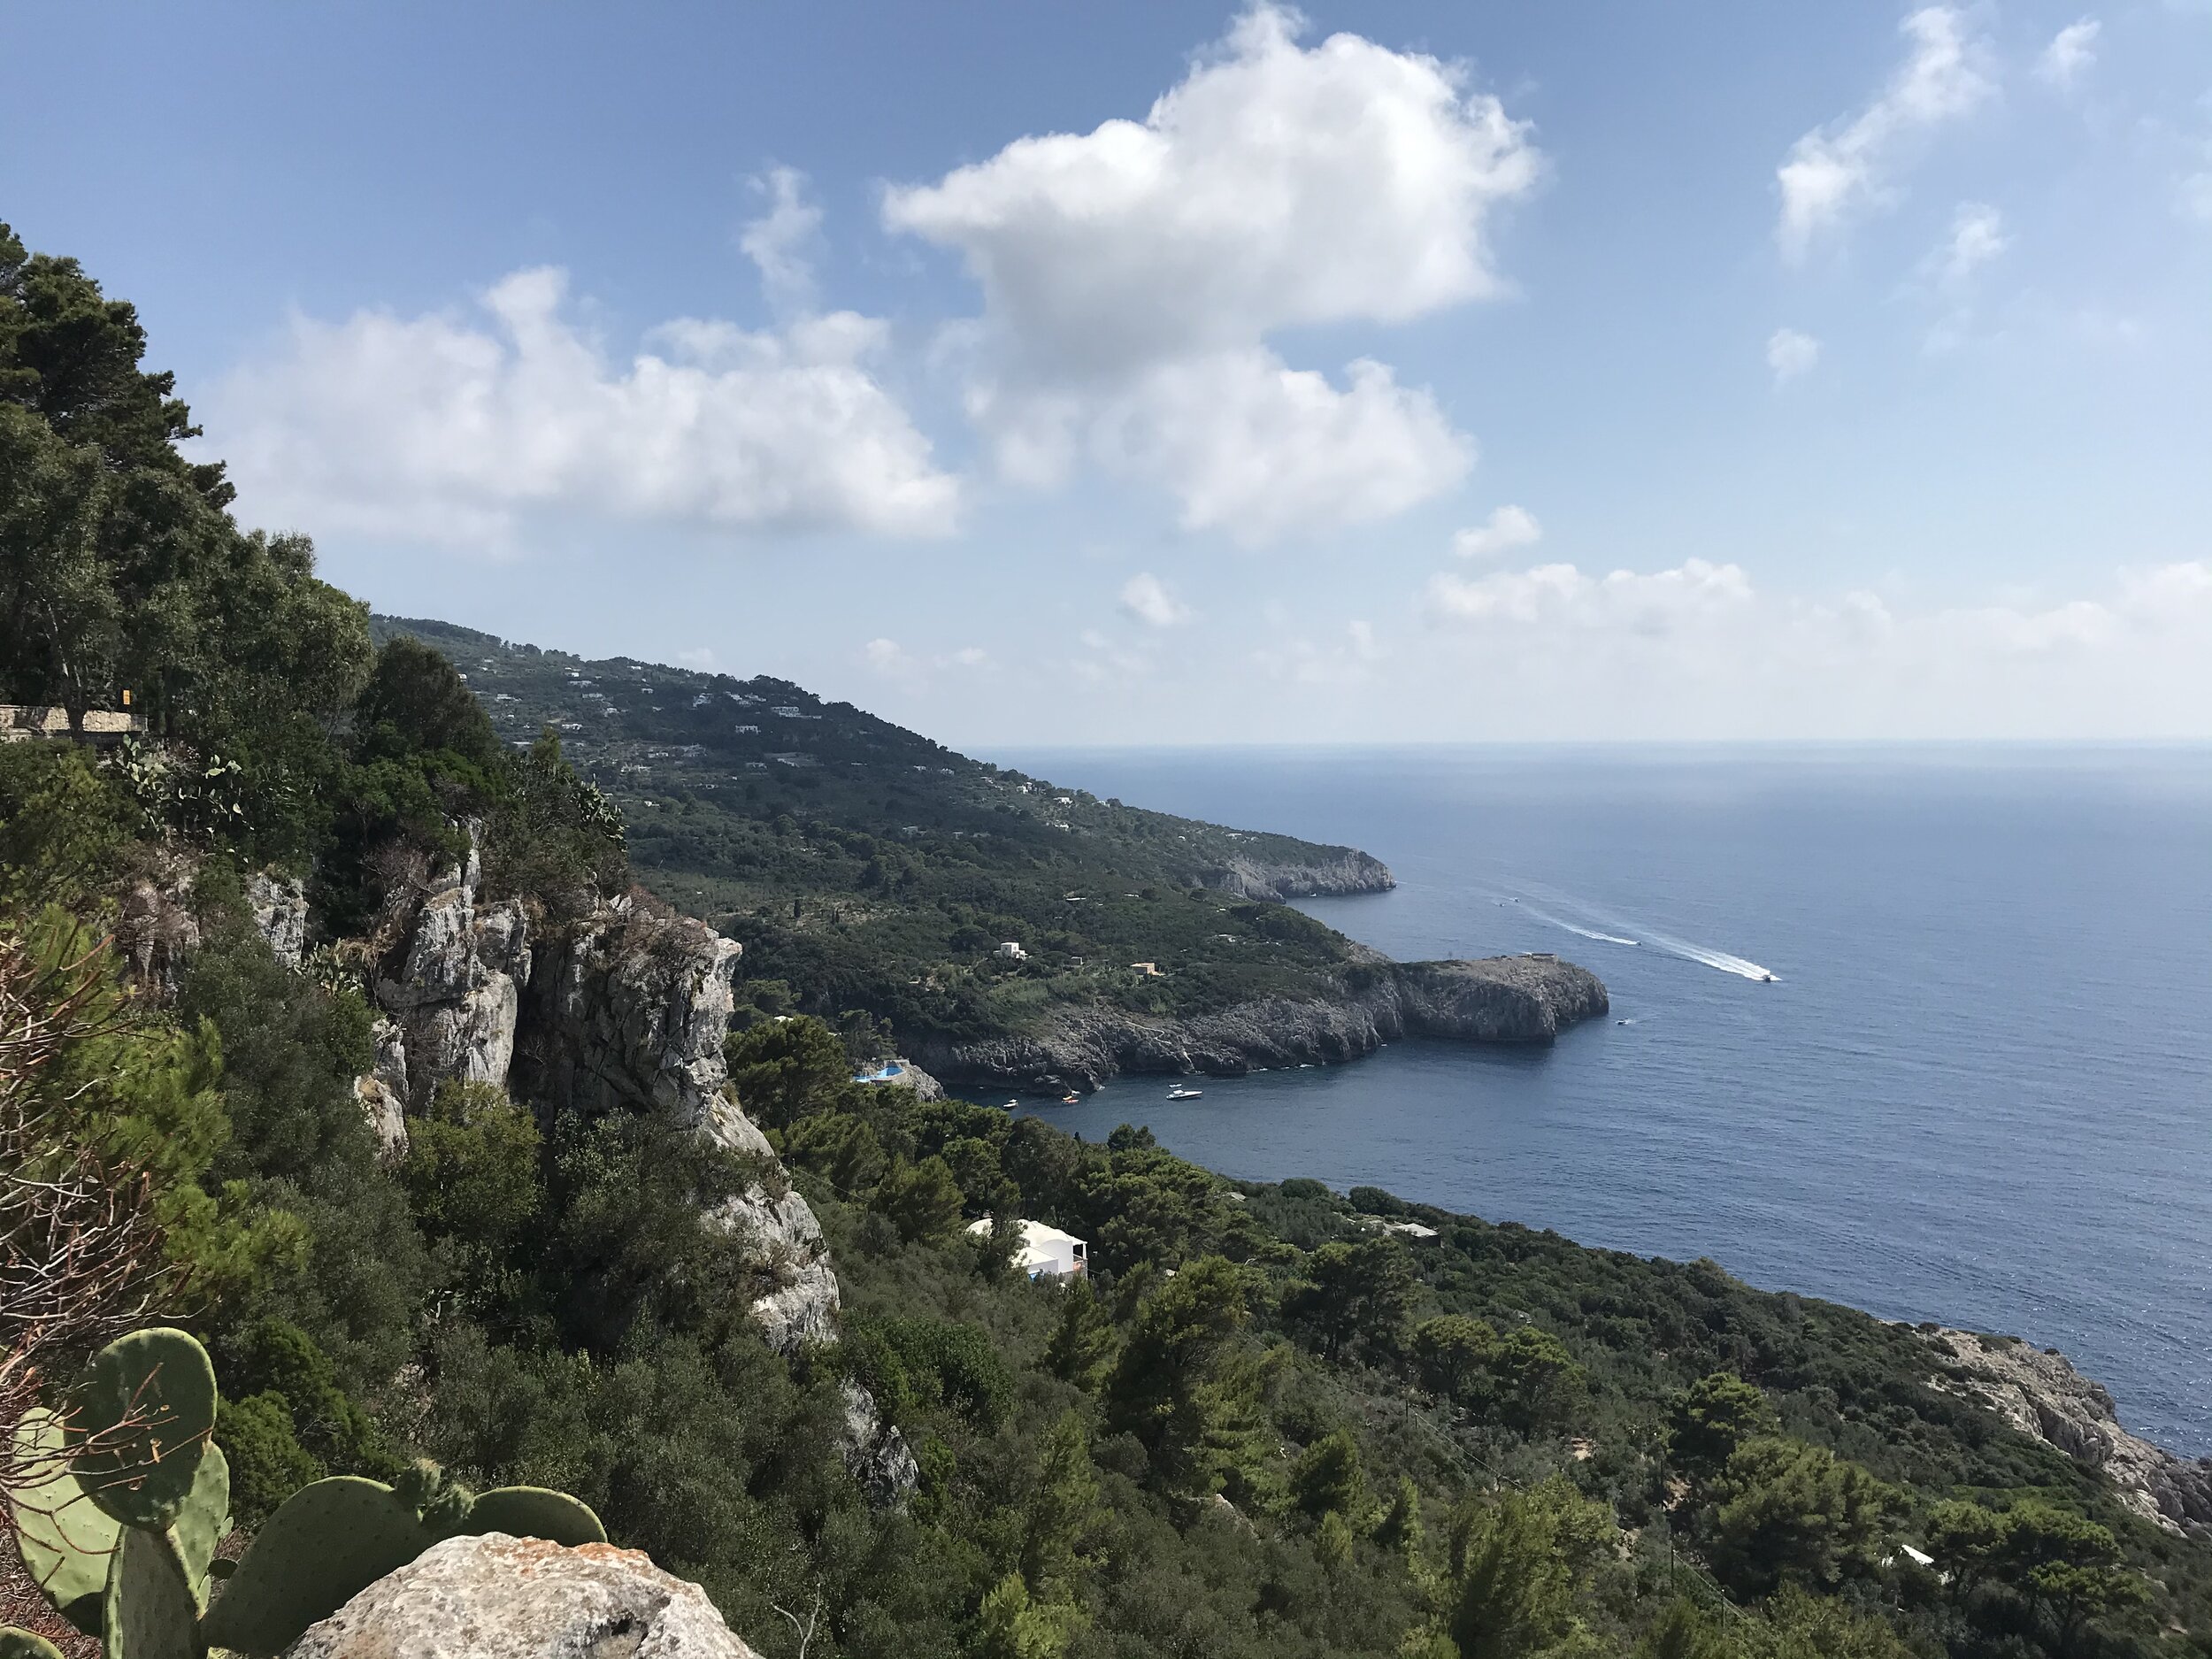  CAPRI, Napoli. August 4th, 2020. PICTURED: The terrain of Capri rolls into the beautiful blue sea. Seen from the hills surrounding Emperor Tiberius’ villa. 